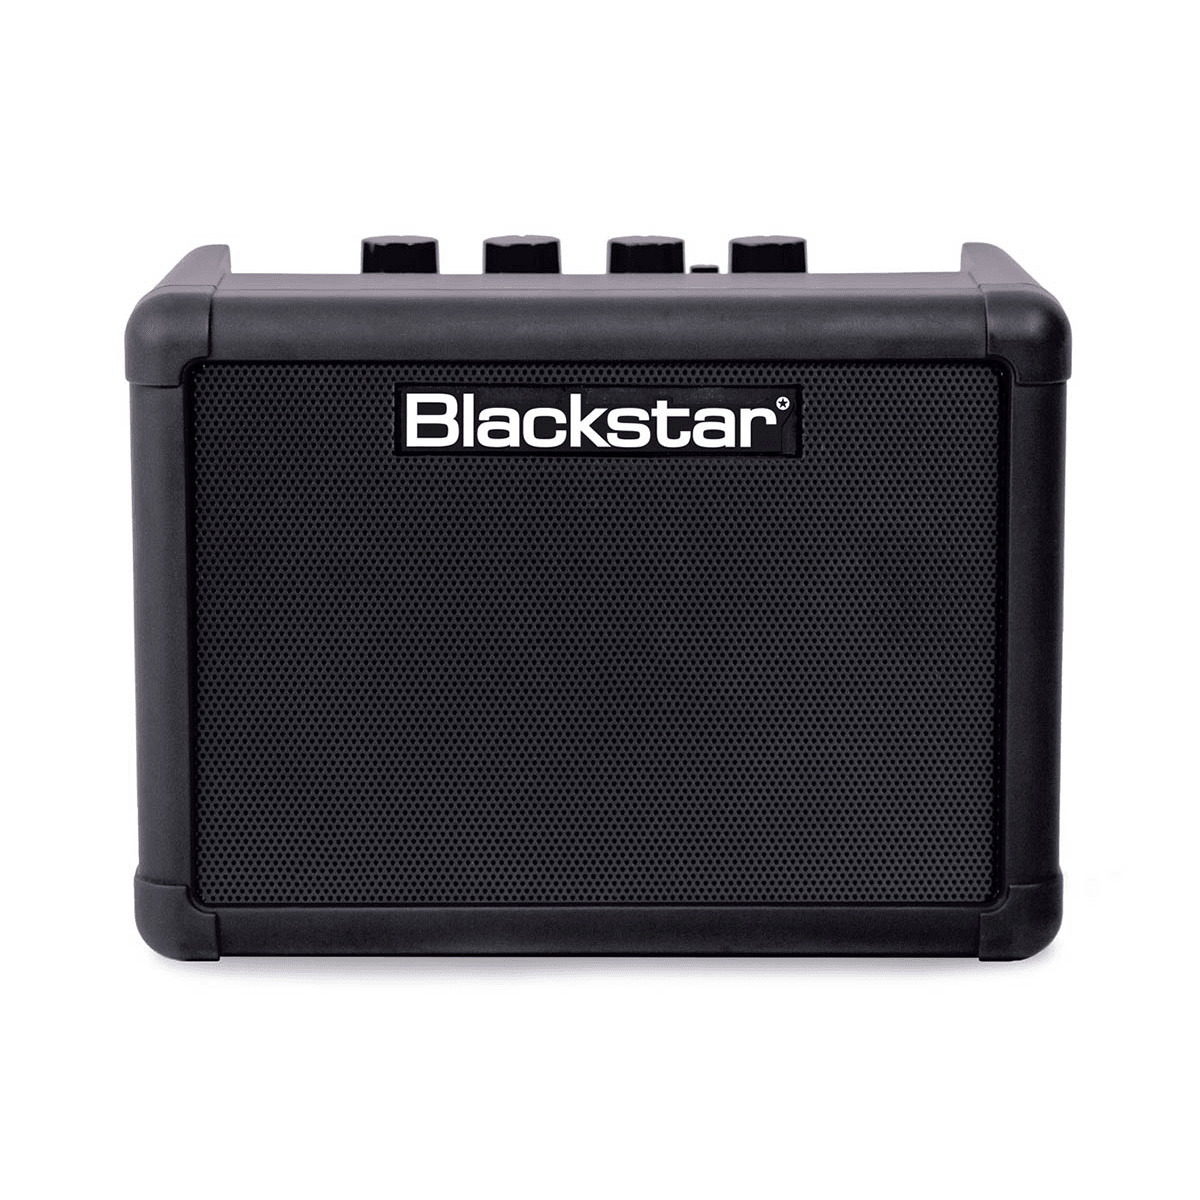 Blackstar 3W 2CH COMPACT BLUETOOTH MINI AMP W FX - Guitars - Amplifiers by Blackstar at Muso's Stuff